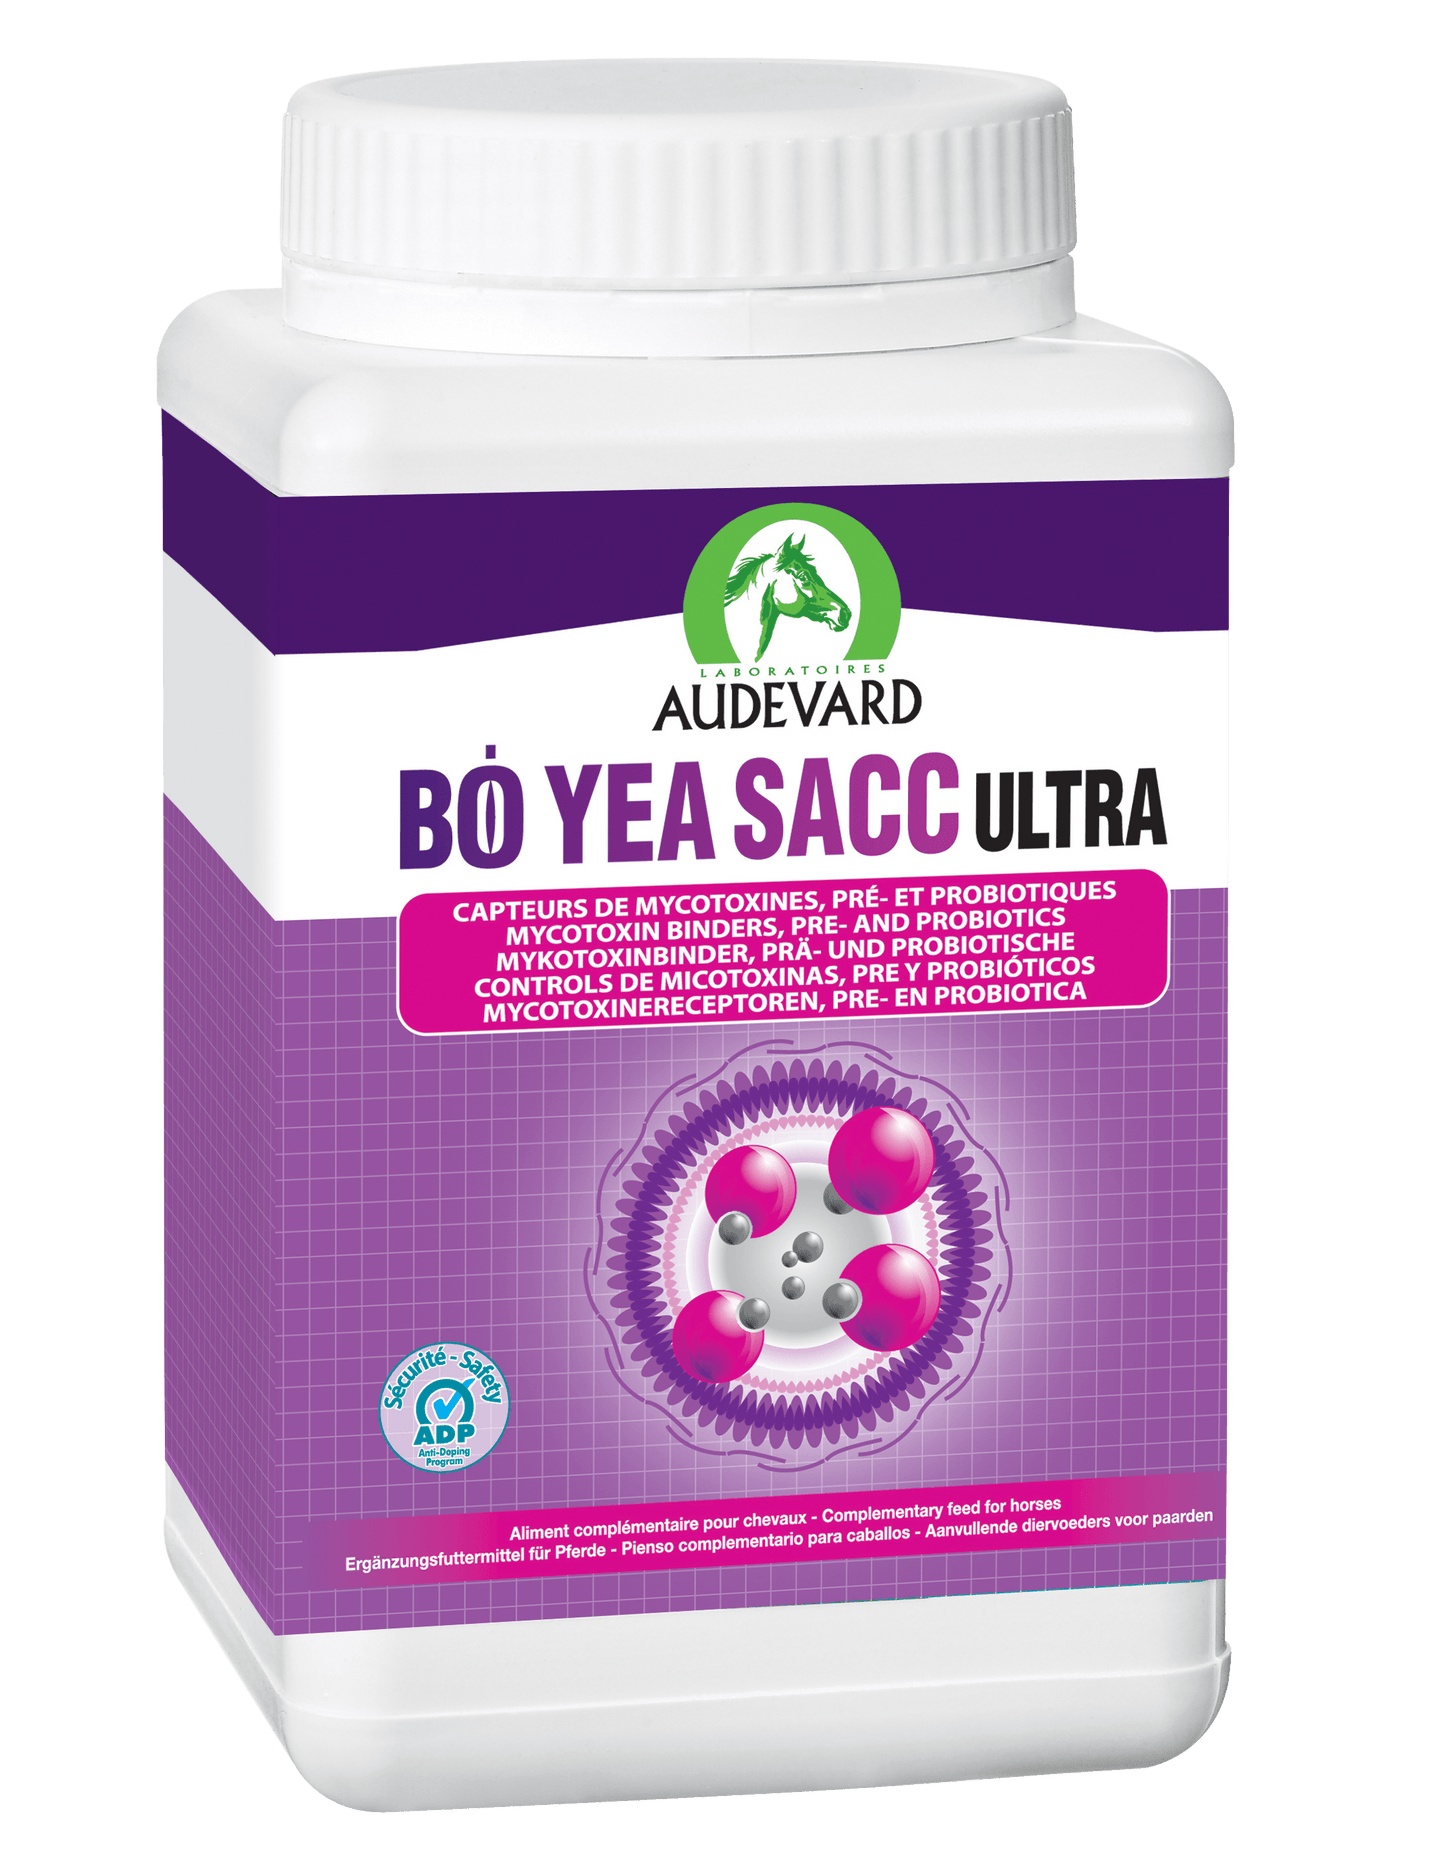 Bo Yea Sacc Ultra - Audevard - Darreichungsform:Granulat, Ergänzungsfuttermittel:Verdauung, Tierart:Pferd - Marigin AG Onlineshop für Tierbedarf